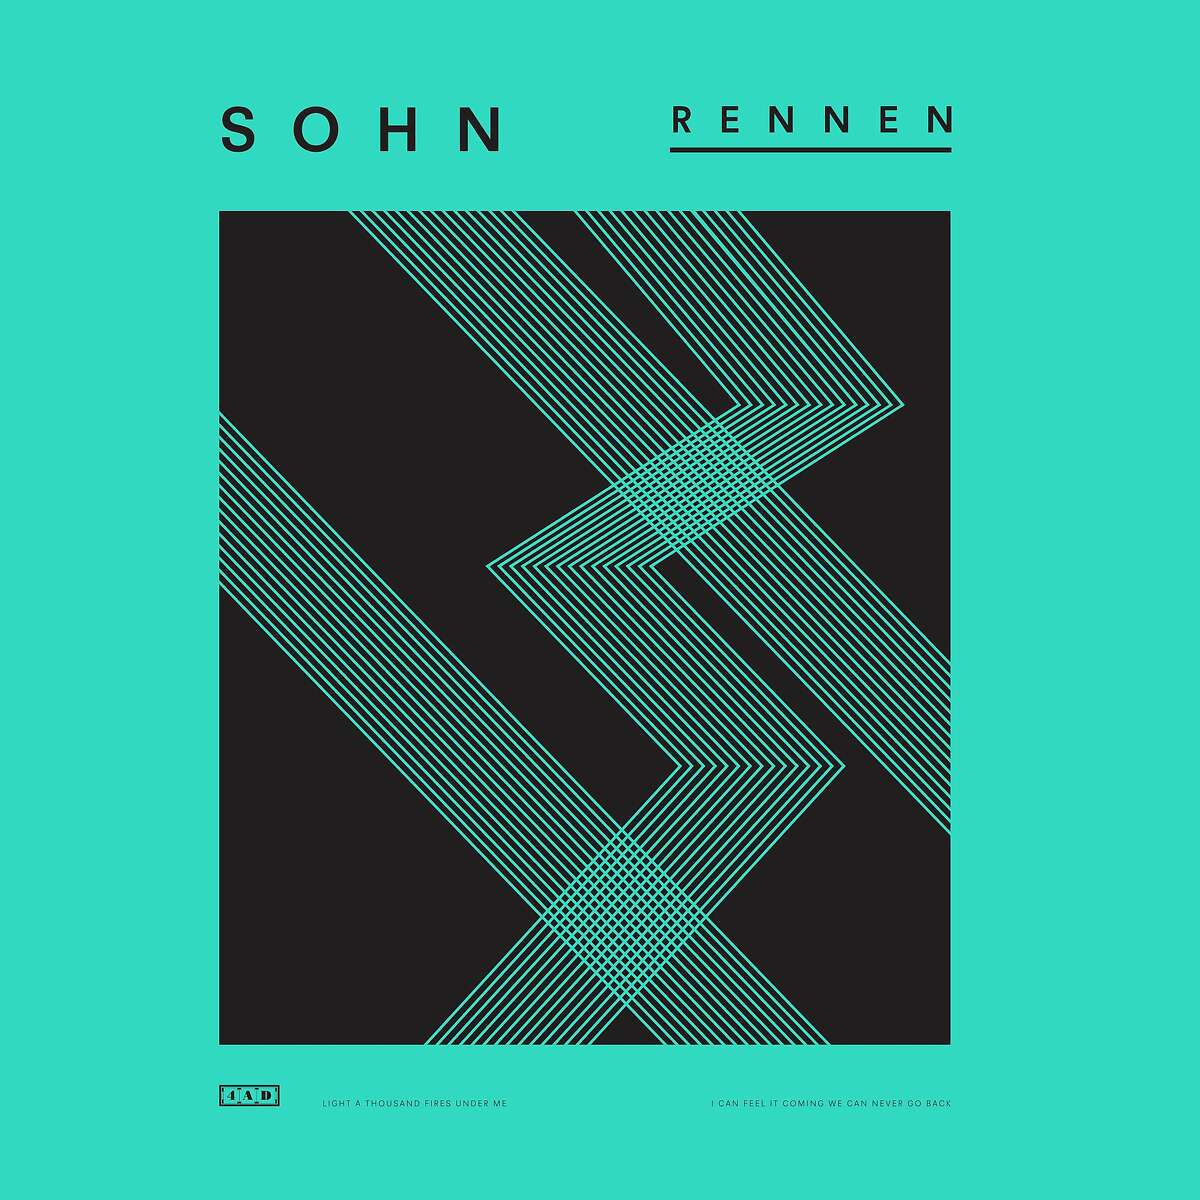 Album artwork for SOHN's latest release, "Rennen."